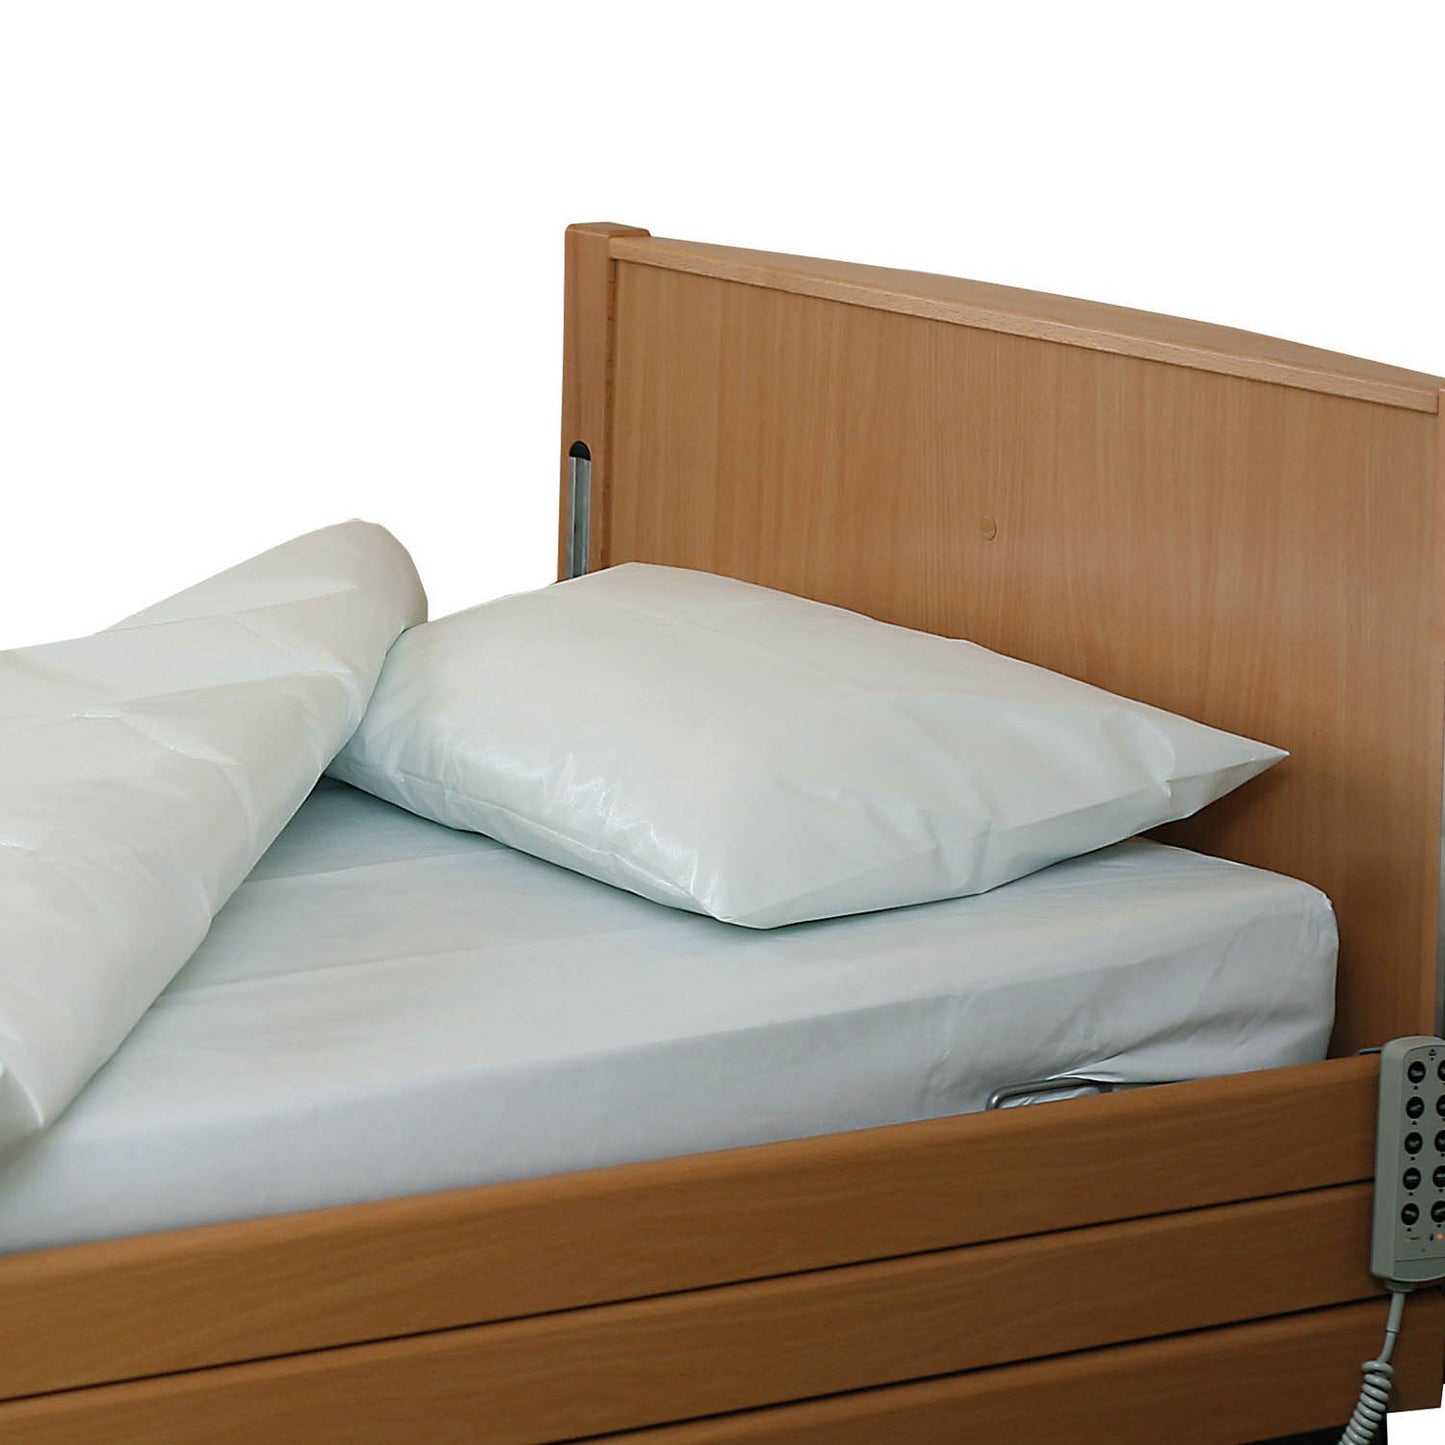 Community pillow protectors - Size 48 x 66cm